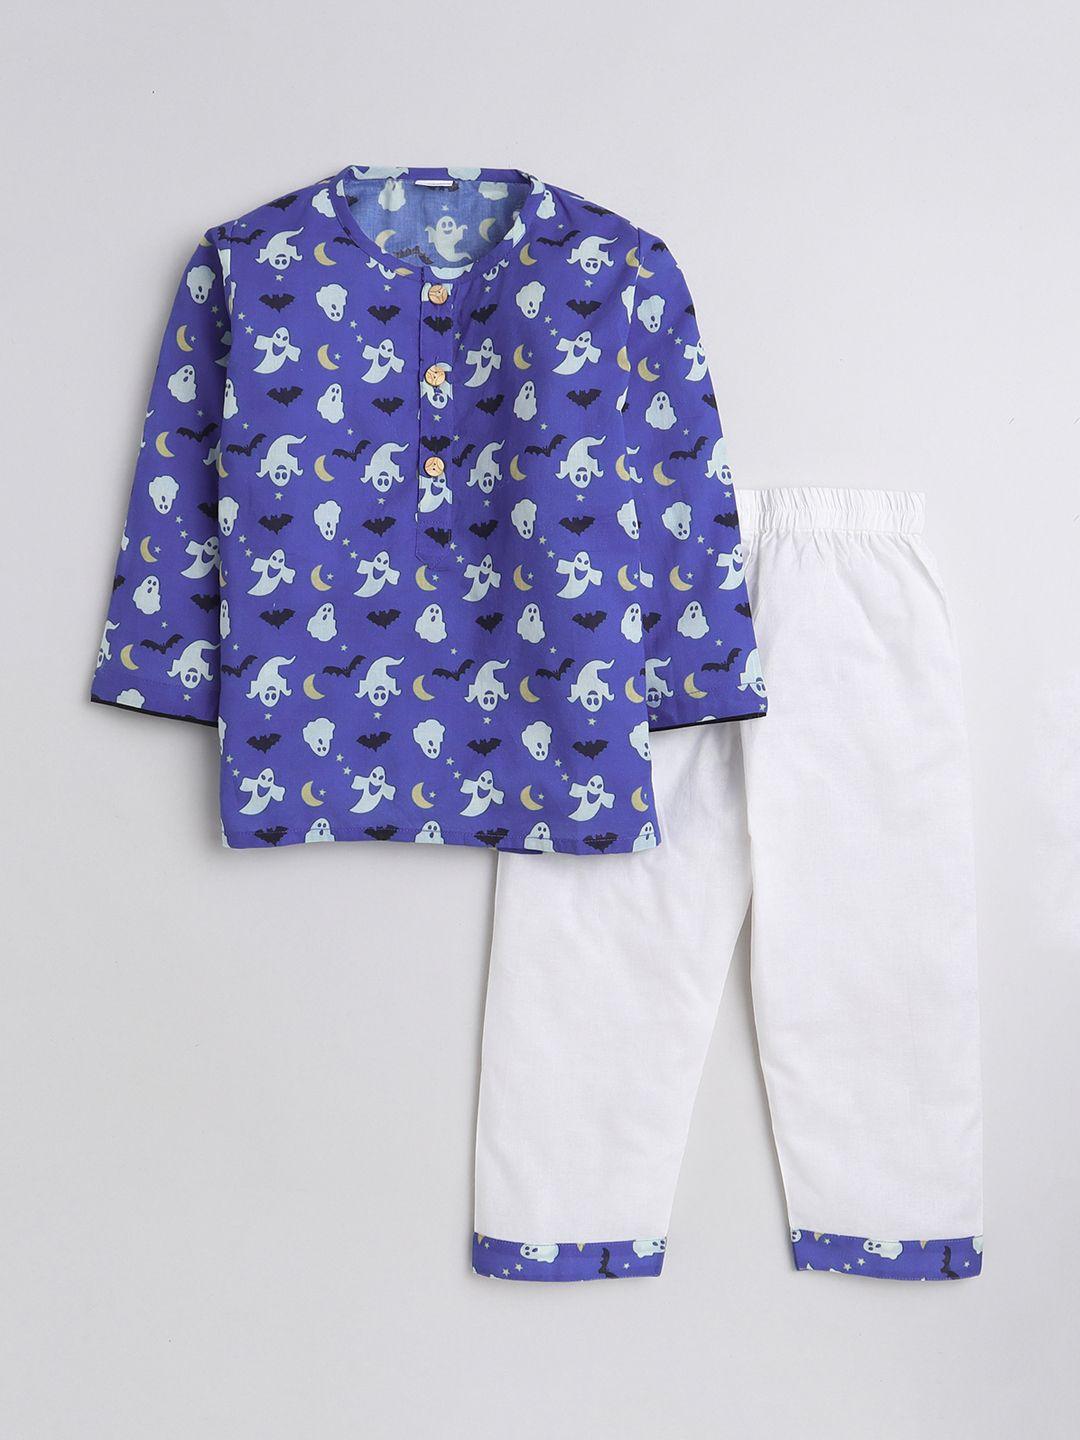 baesd kids conversational printed pure cotton shirt with pyjamas